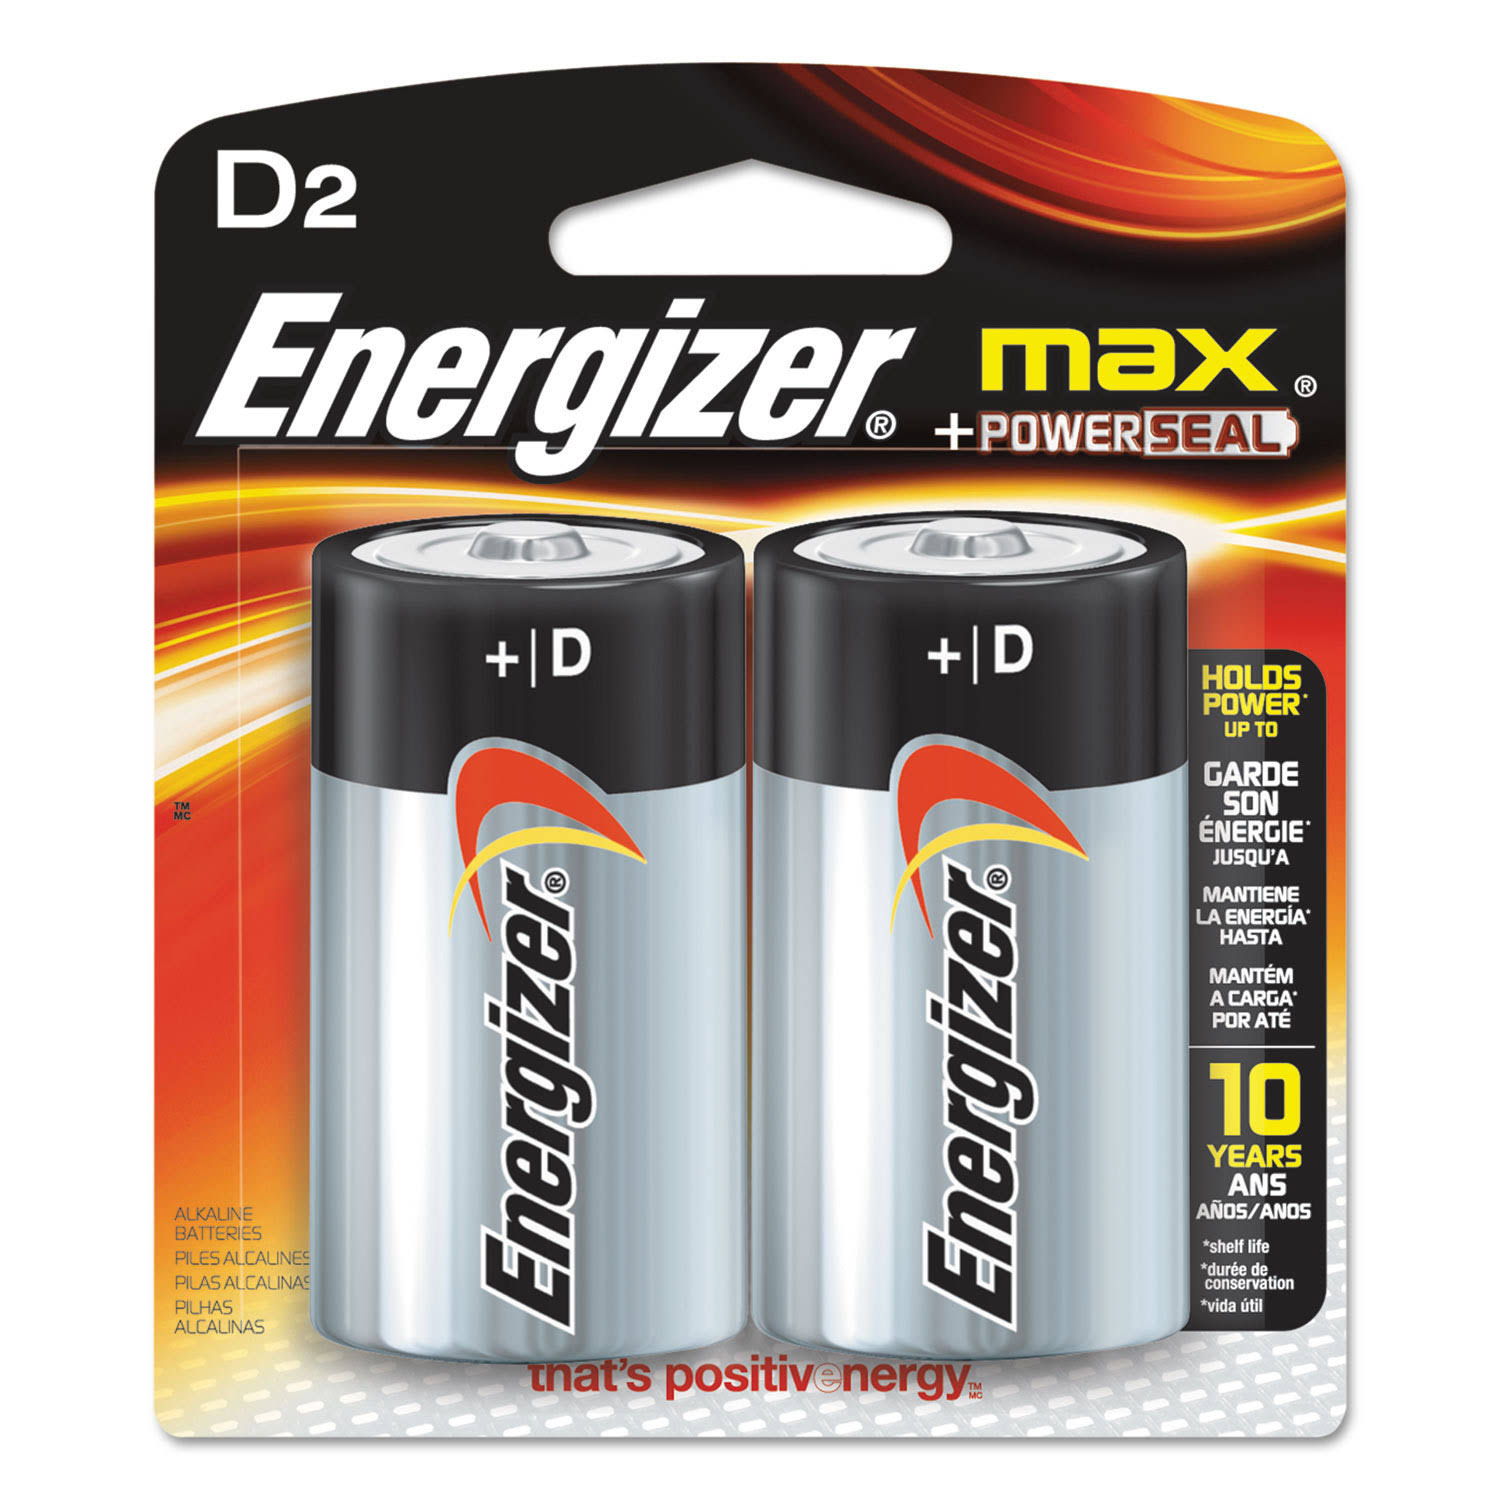 Energizer Max Alkaline Batteries - Size D2